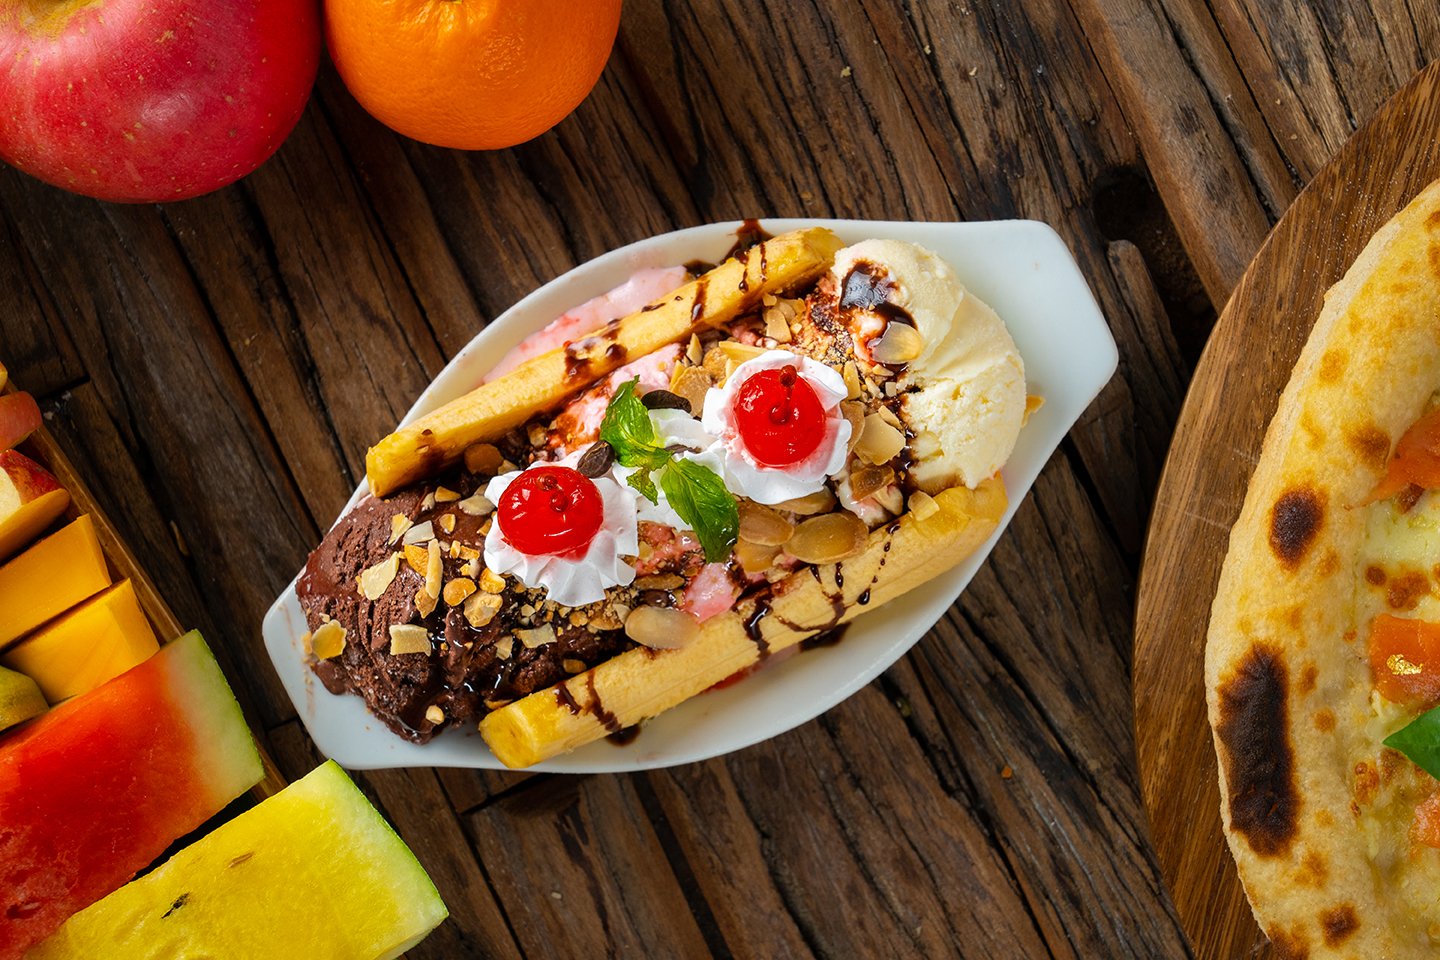 Banana with chocolate, vanilla and strawberry ice cream